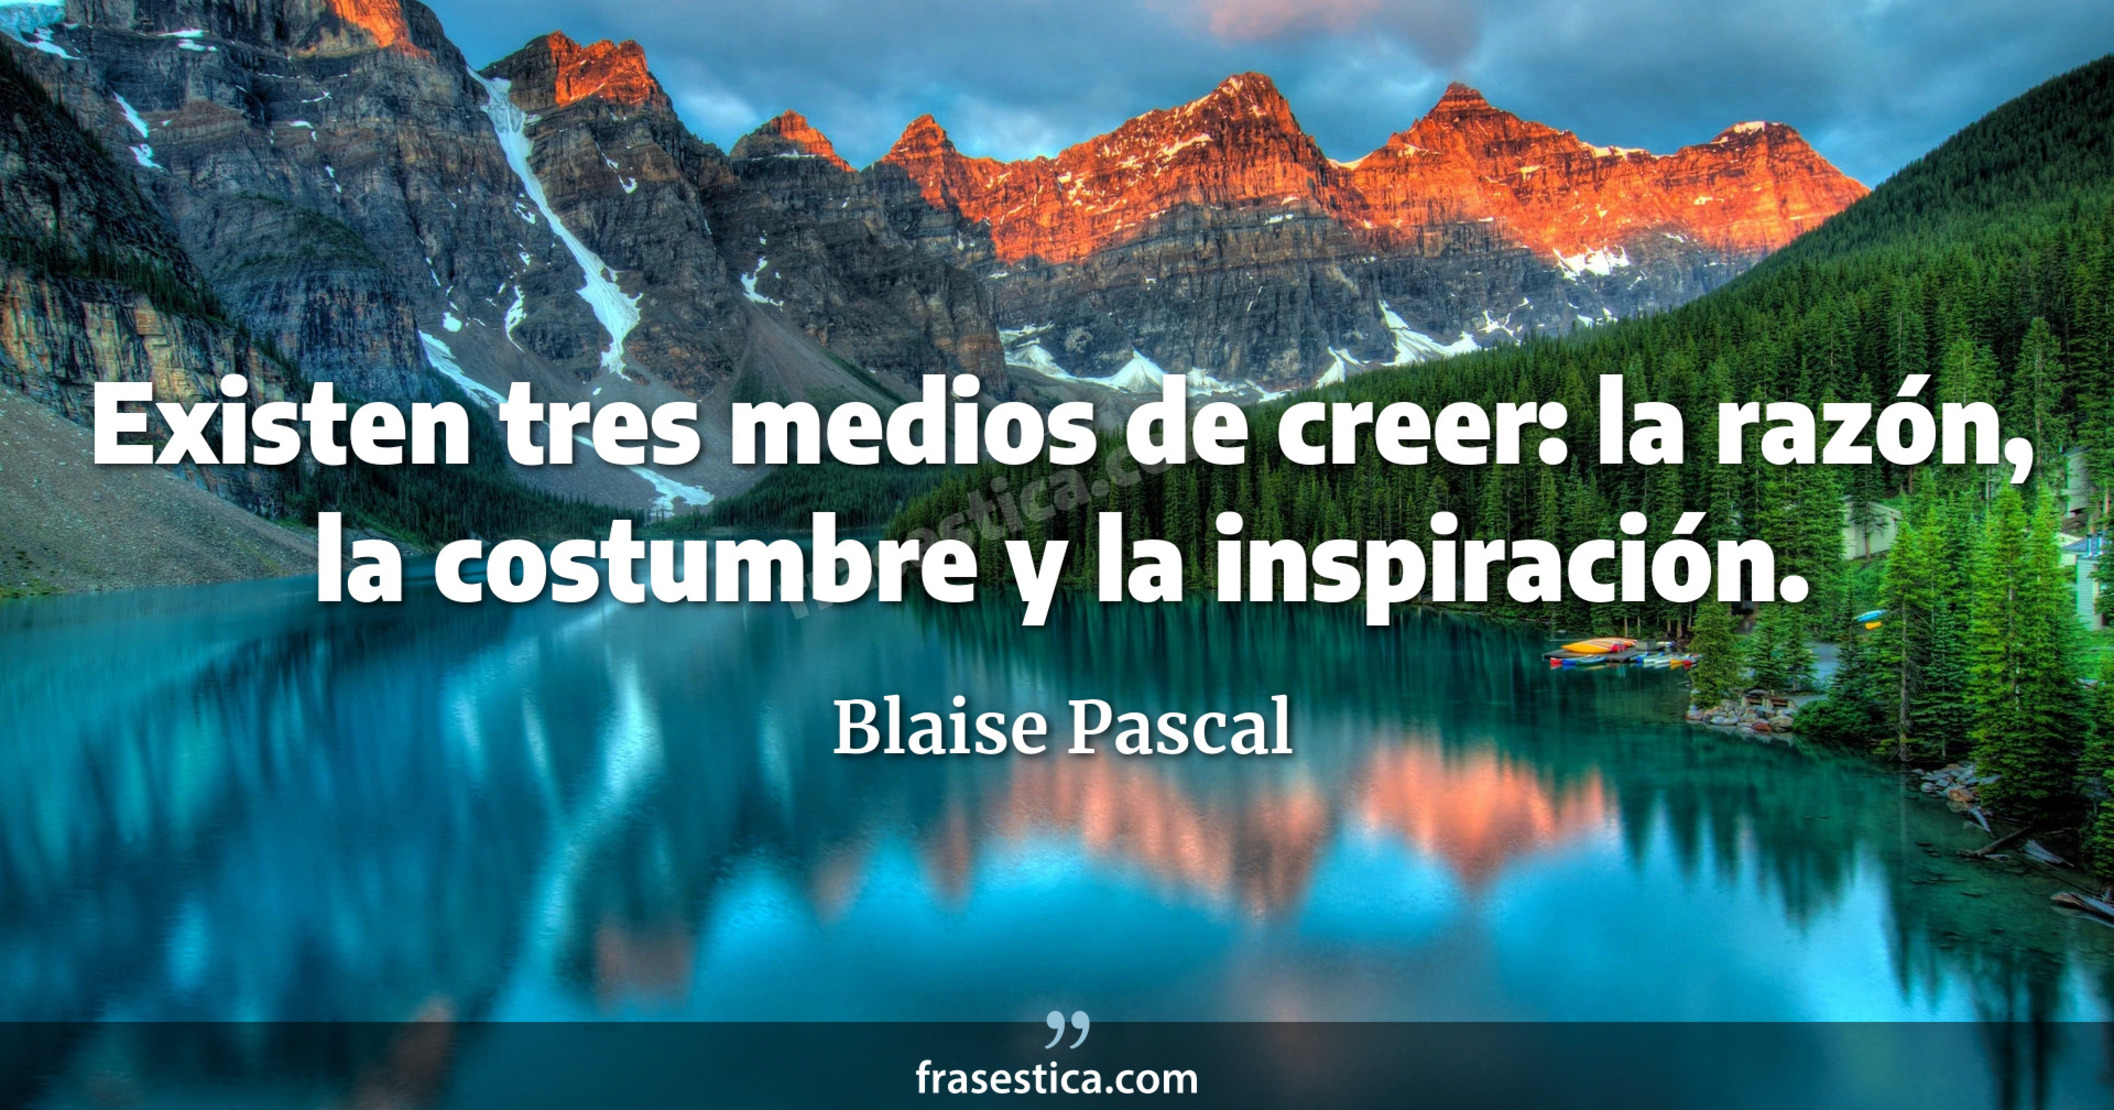 Existen tres medios de creer: la razón, la costumbre y la inspiración. - Blaise Pascal